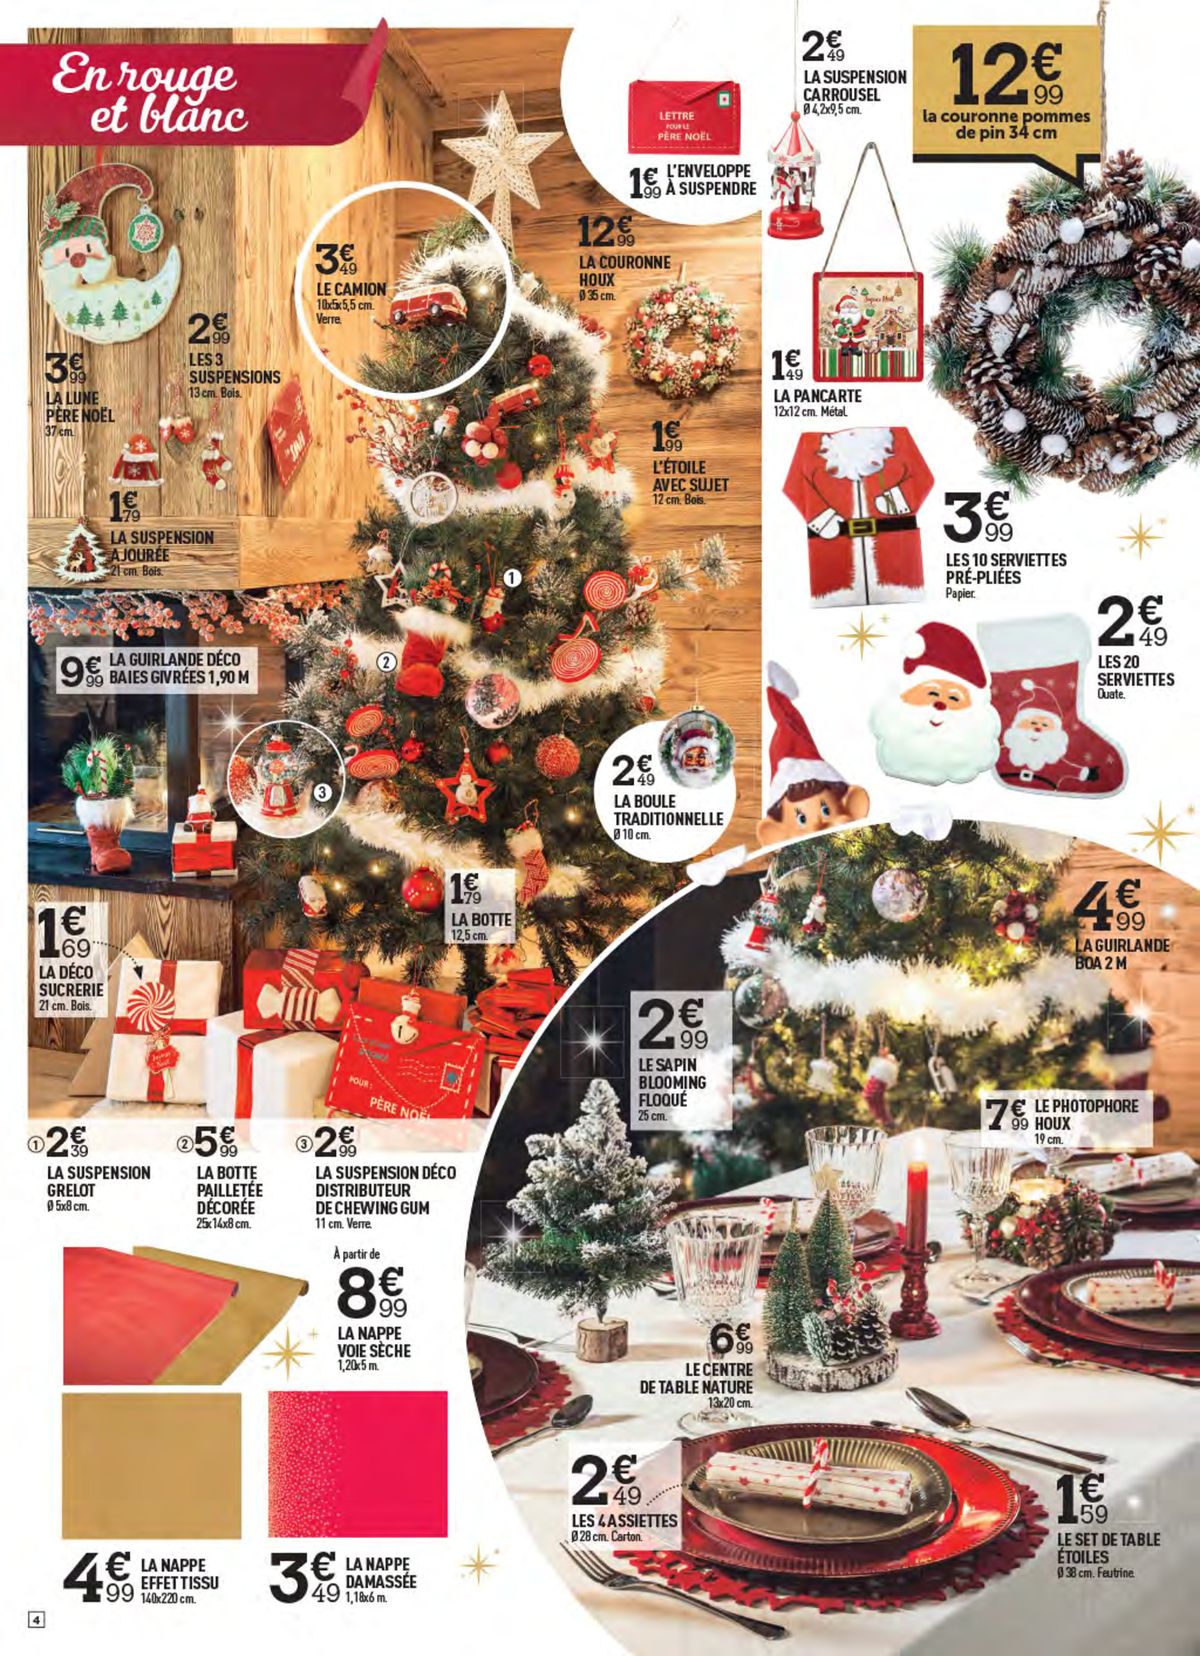 Catalogue Mon Noël féérique !, page 00004